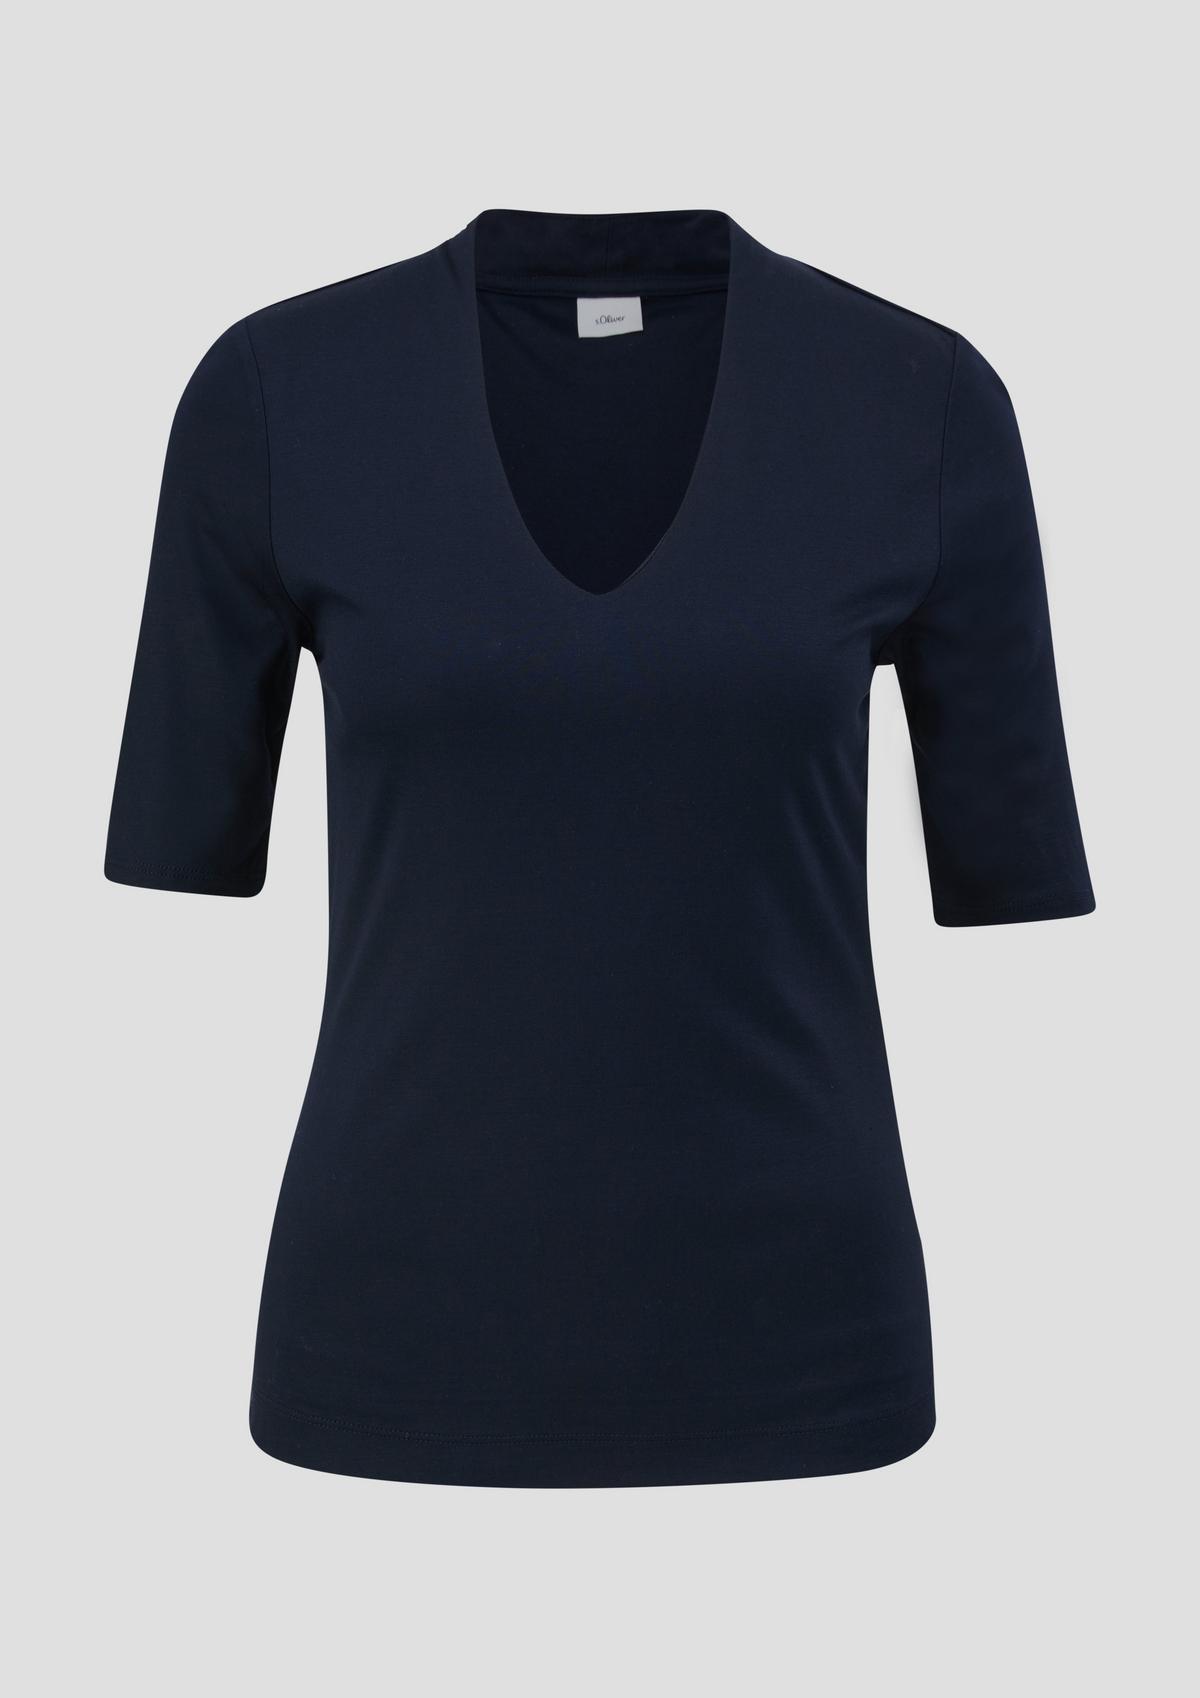  BLACK LABEL - T-Shirts & Tops jetzt Online kaufen